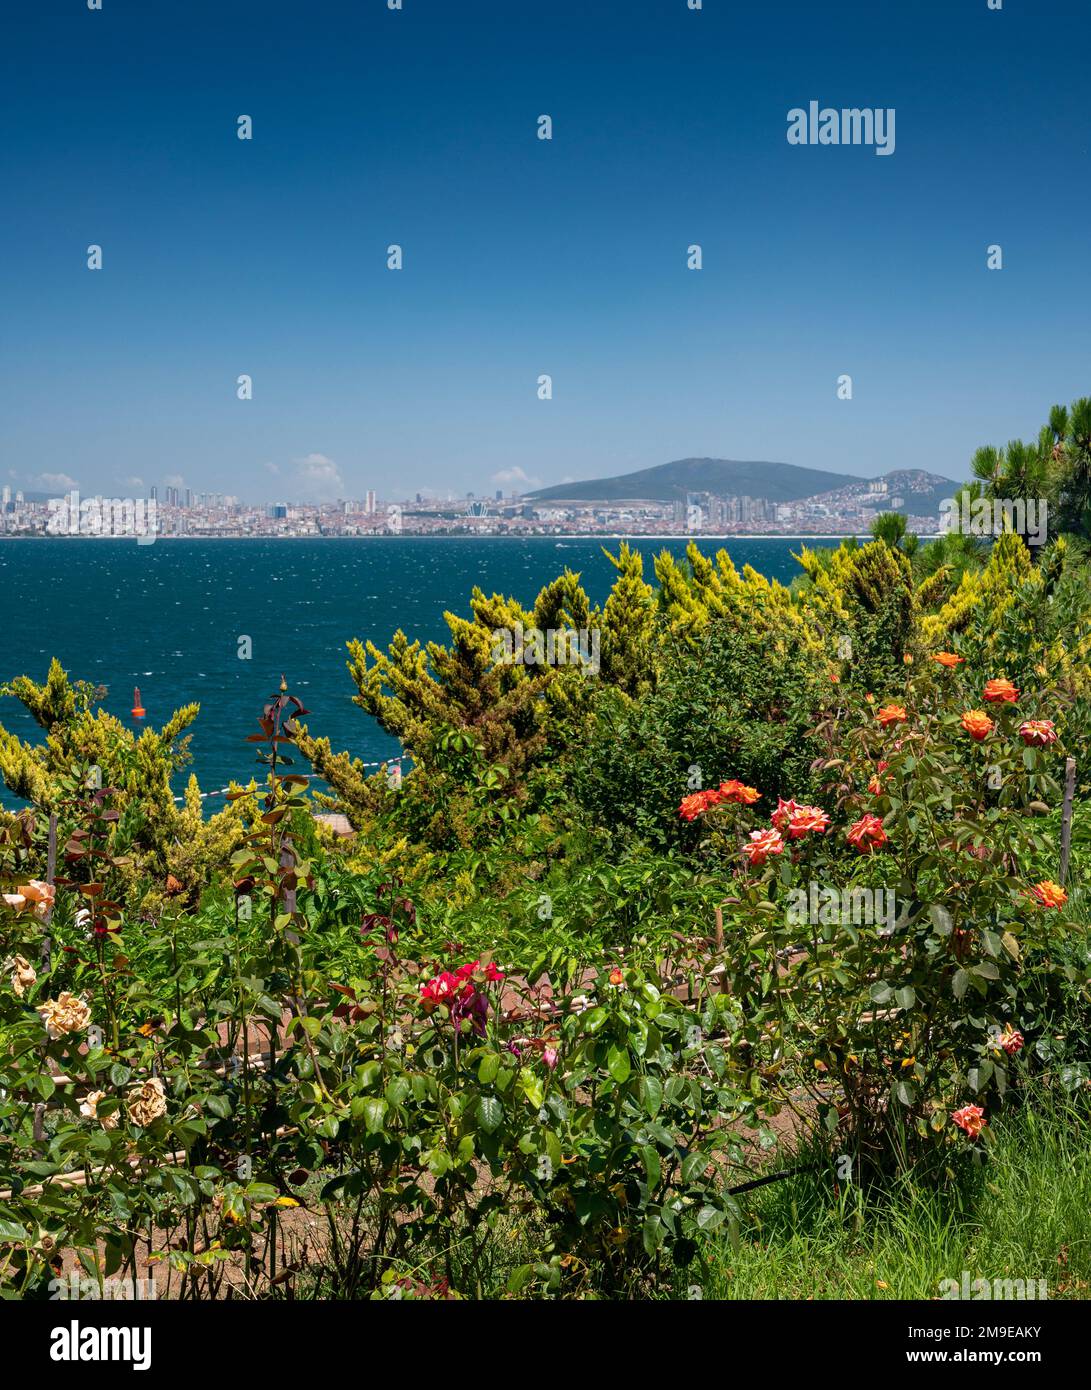 Vue sur la mer de Marmara à Istanbul depuis le magnifique jardin de roses avec les îles Adalar par une belle journée d'été. Turquie Banque D'Images